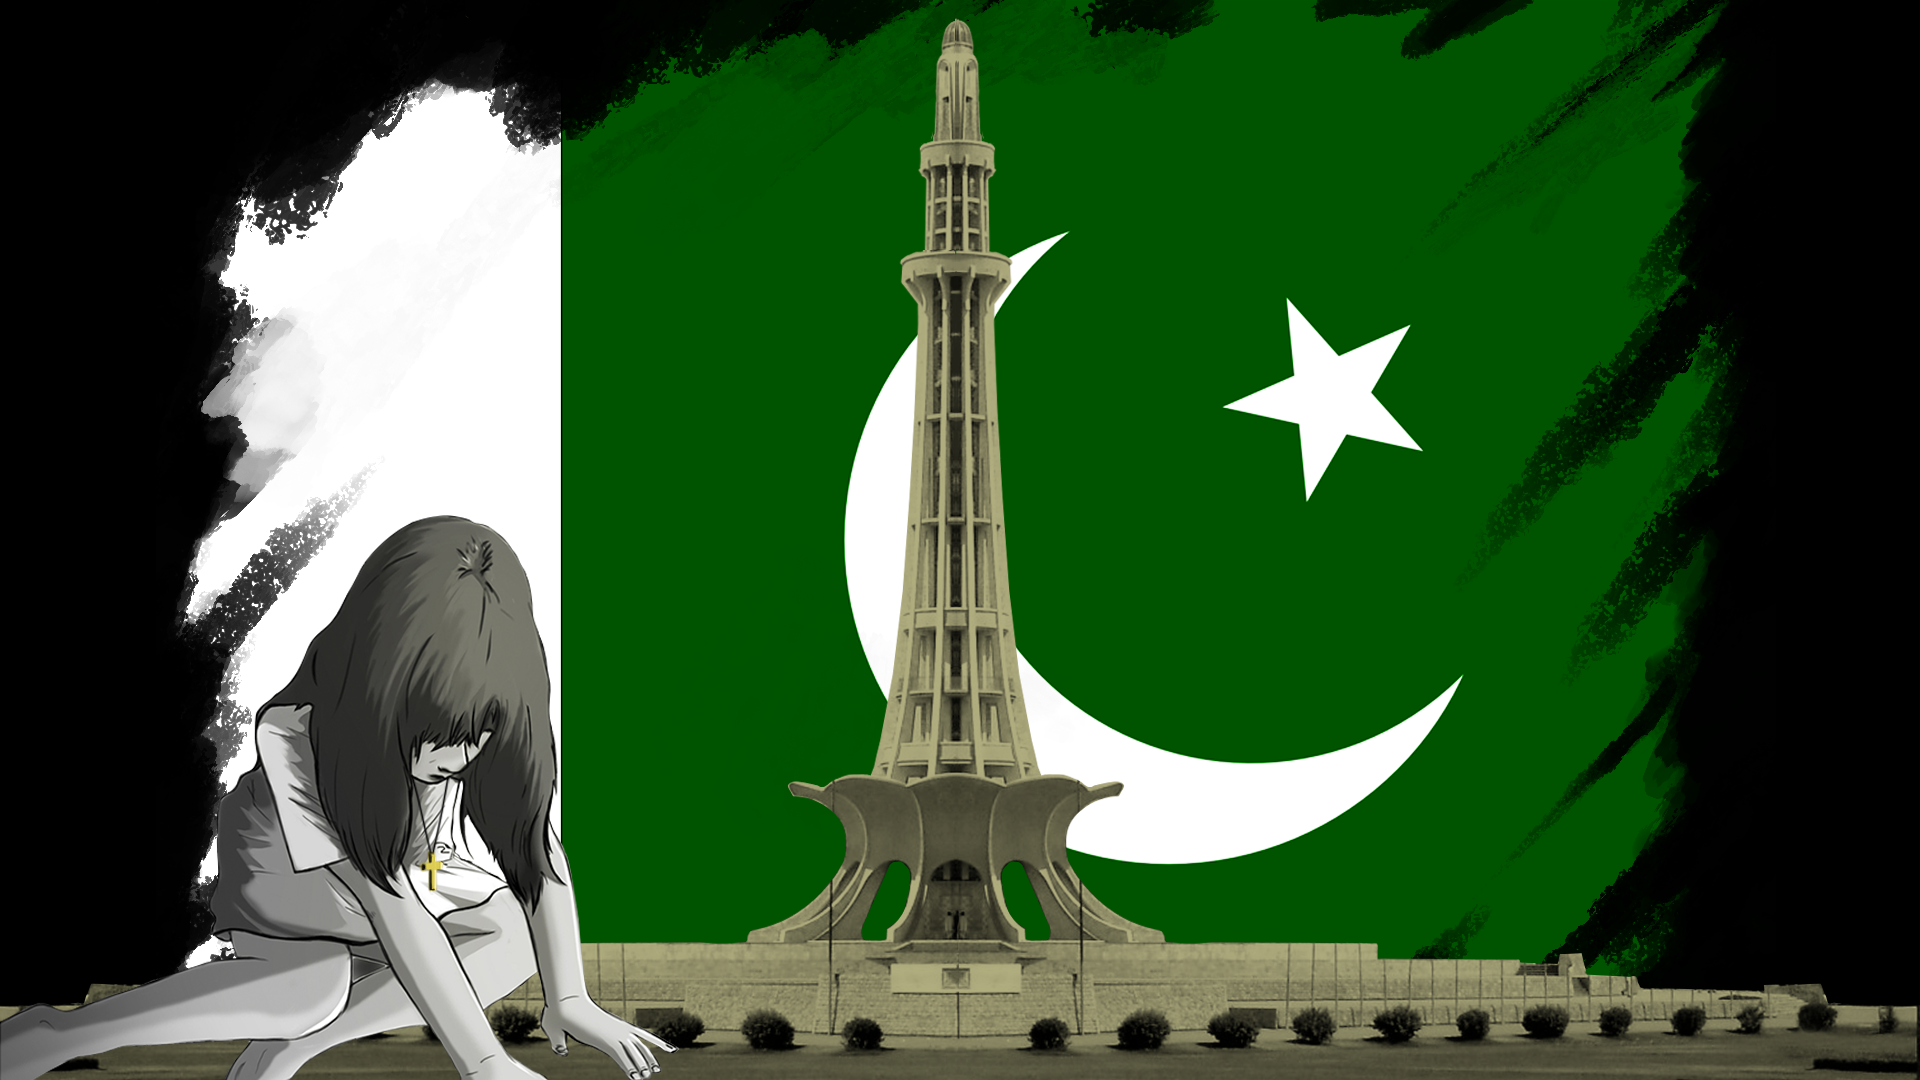 پاکستان میں مسیحی قوم - حقوق، عزت اور وقار کے لئے جنگ - مسیحیوں کے حقوق